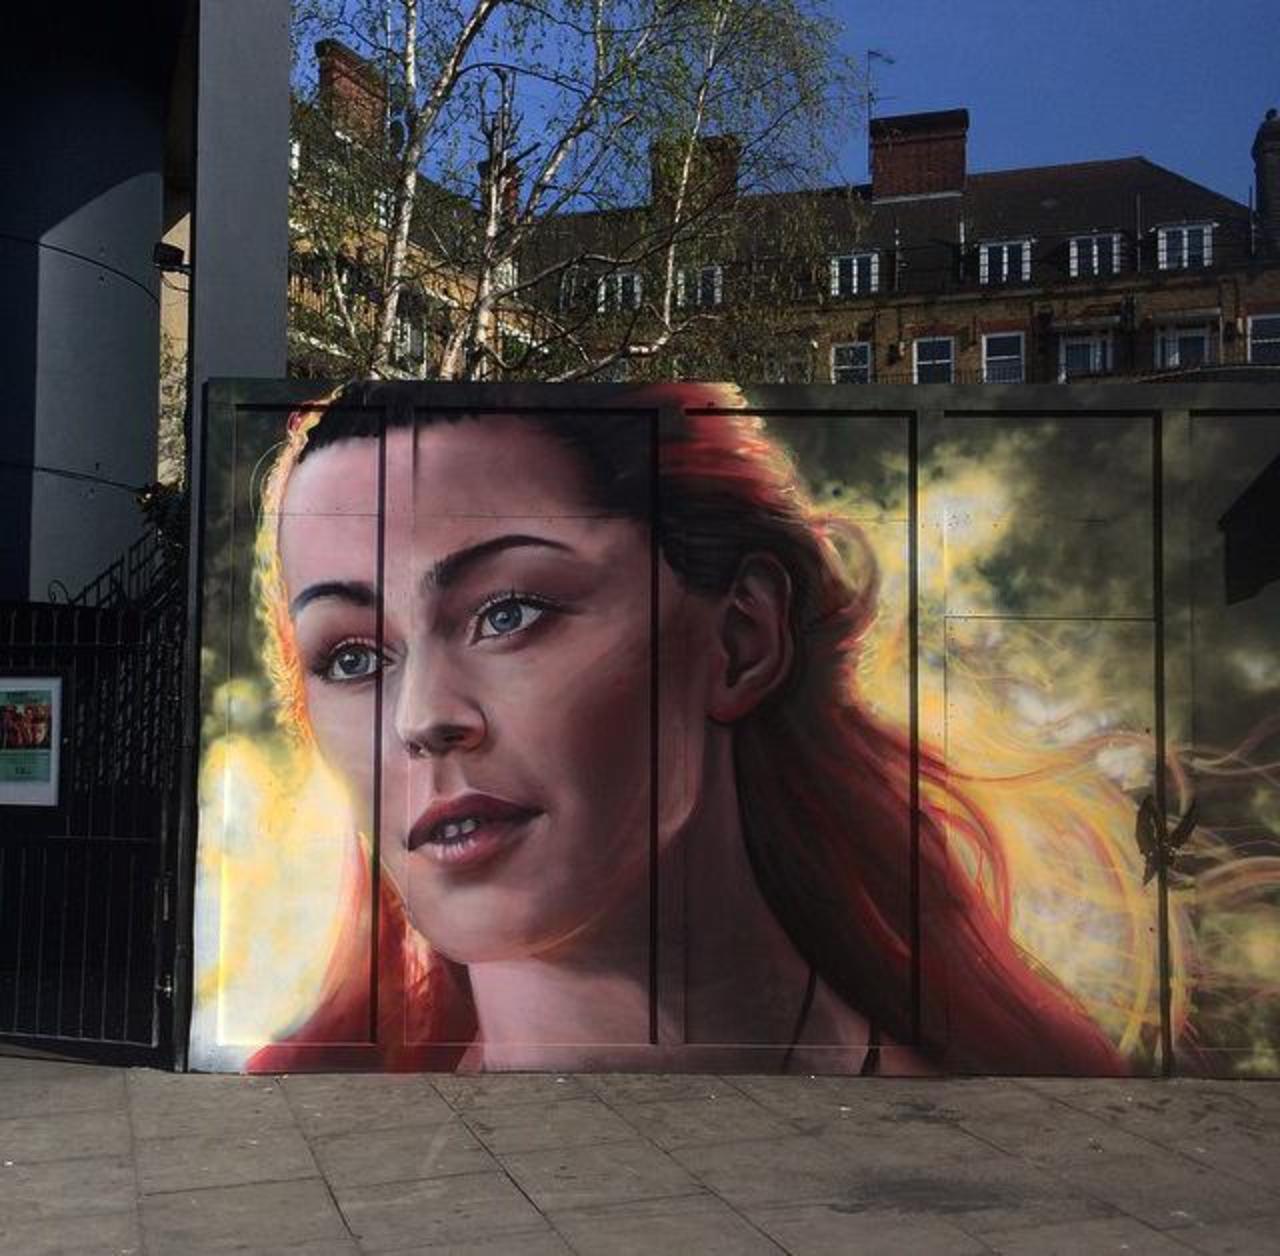 New Street Art portrait by whoamirony in Camden Market, London 

#art #arte #graffiti #streetart http://t.co/y3fEpFk5aS